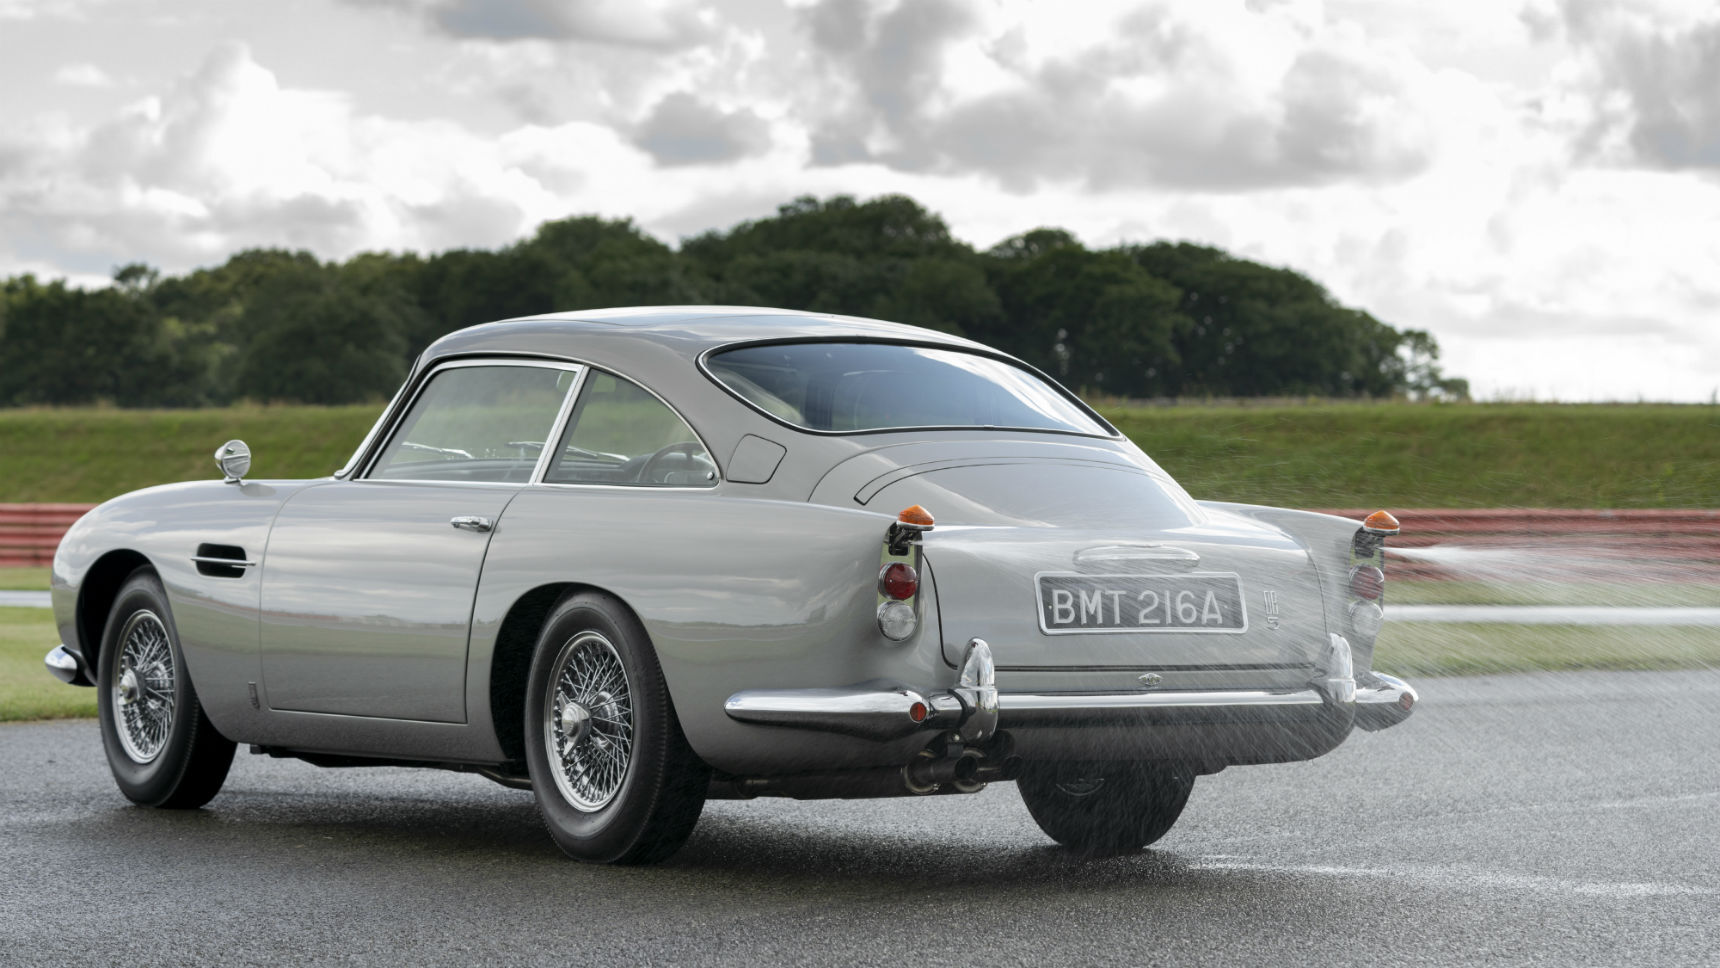 Aston Martin построил спорткар с дымовой завесой, пулеметом и тараном